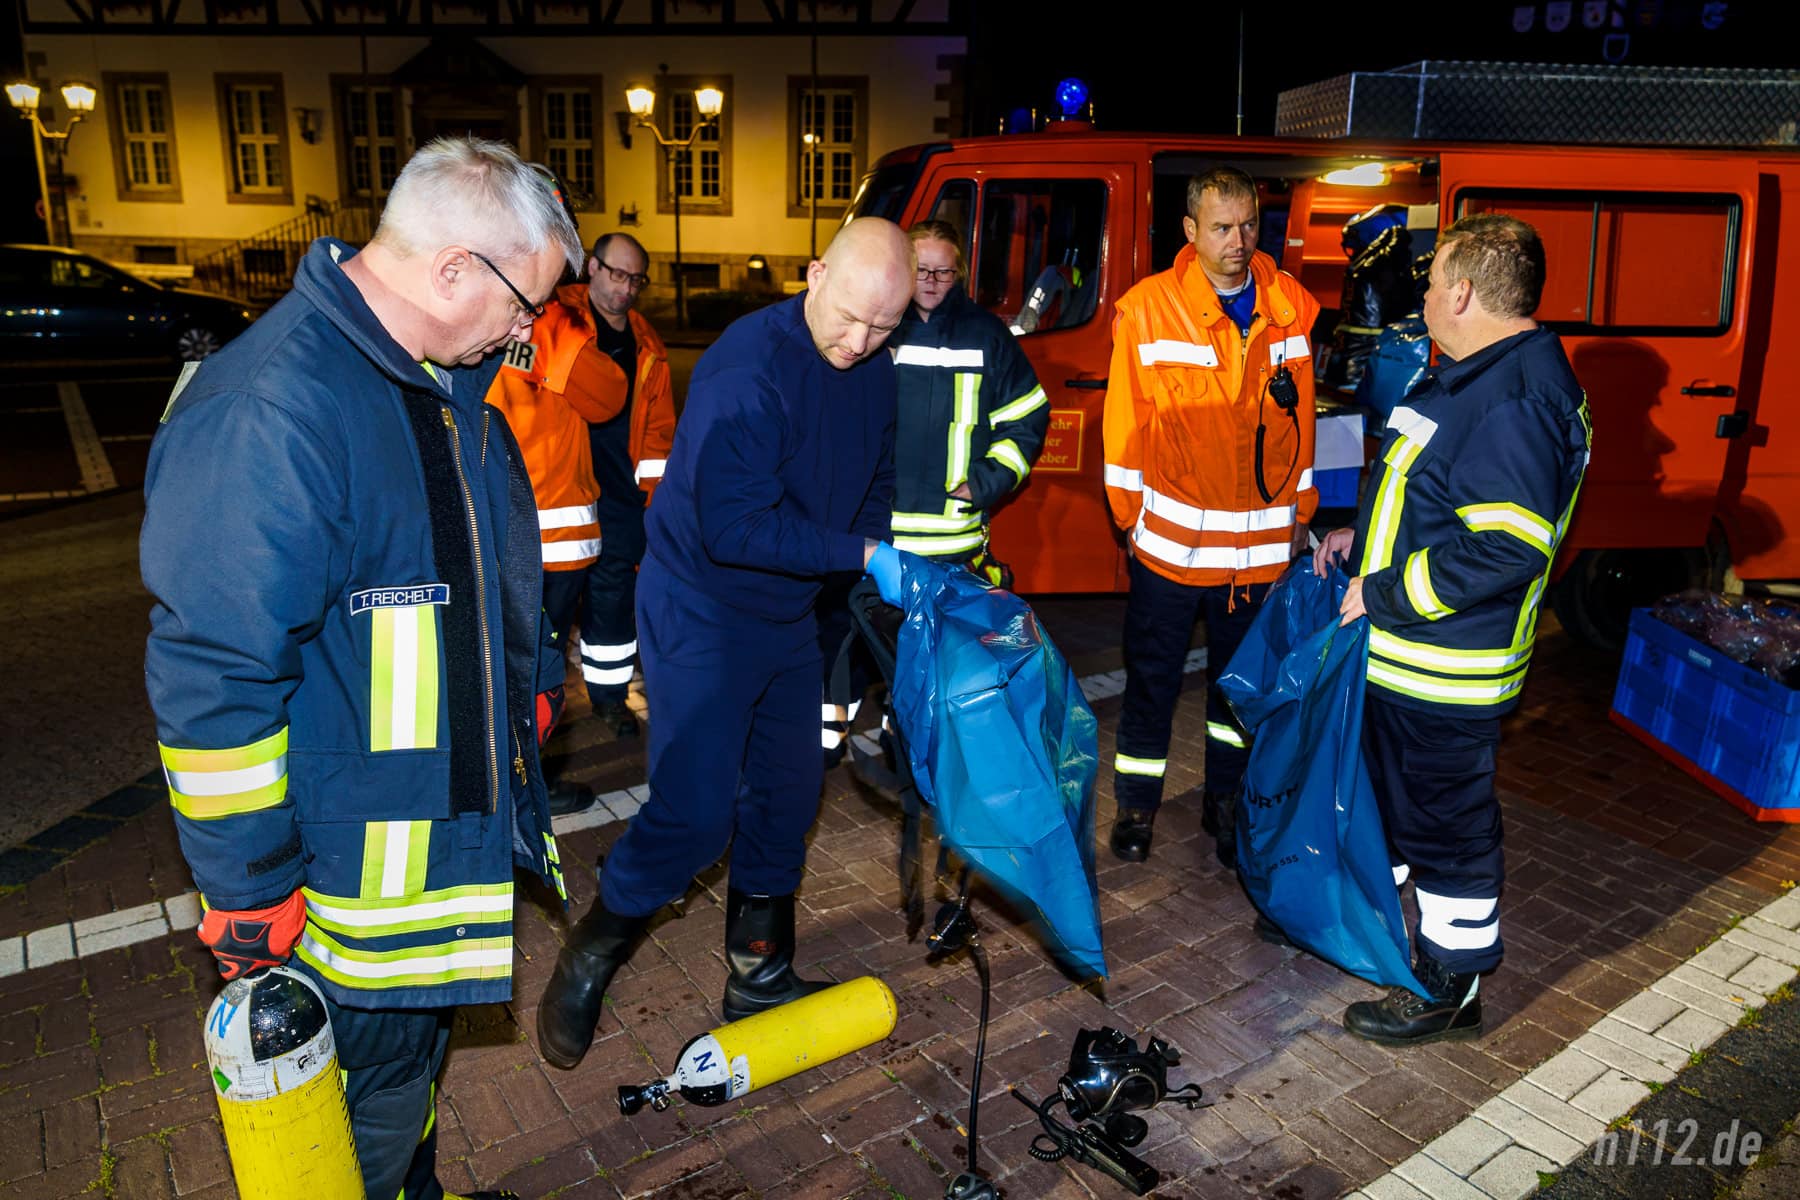 Ein freiwilliger Feuerwehrmann hat seine belastete Einsatzkleidung gegen einen Trainingsanzug getauscht (Foto: n112.de/Stefan Hillen)